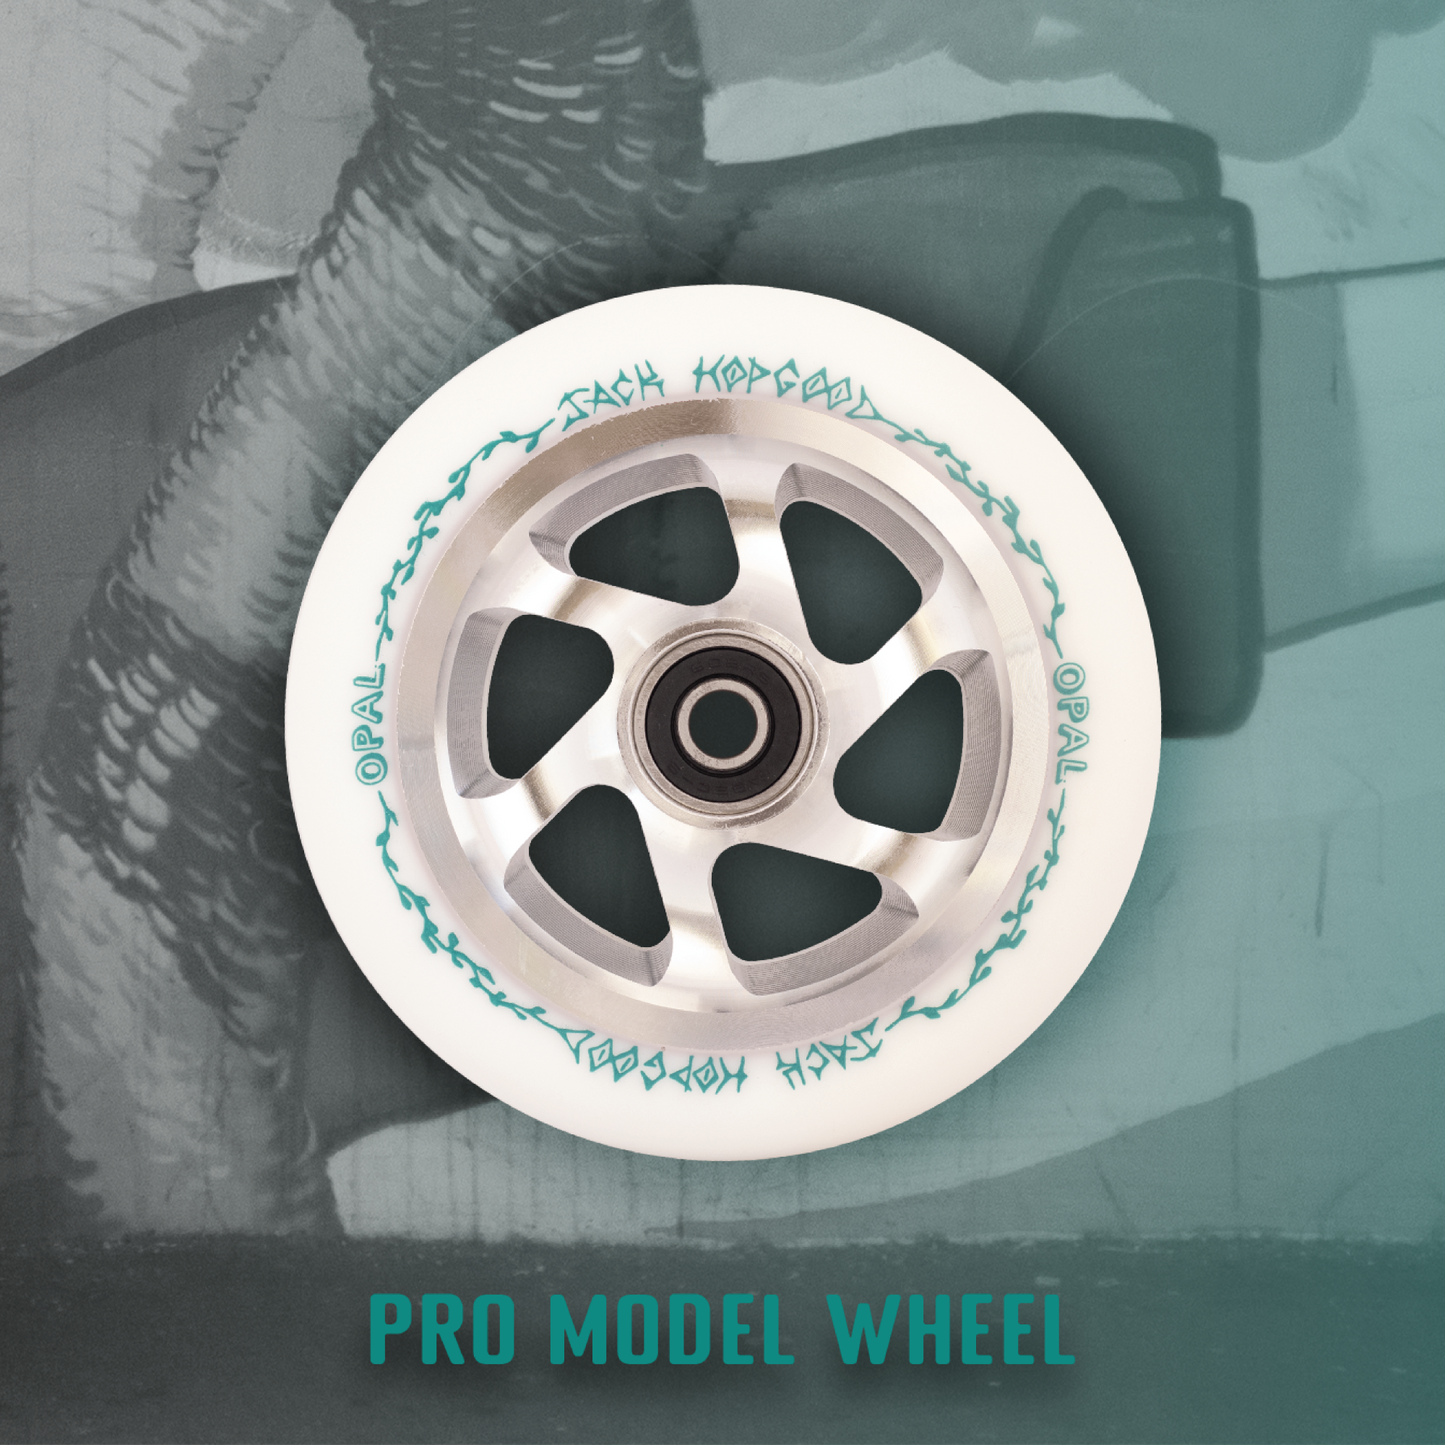 Opal Jack Hopgood Pro Model Wheel